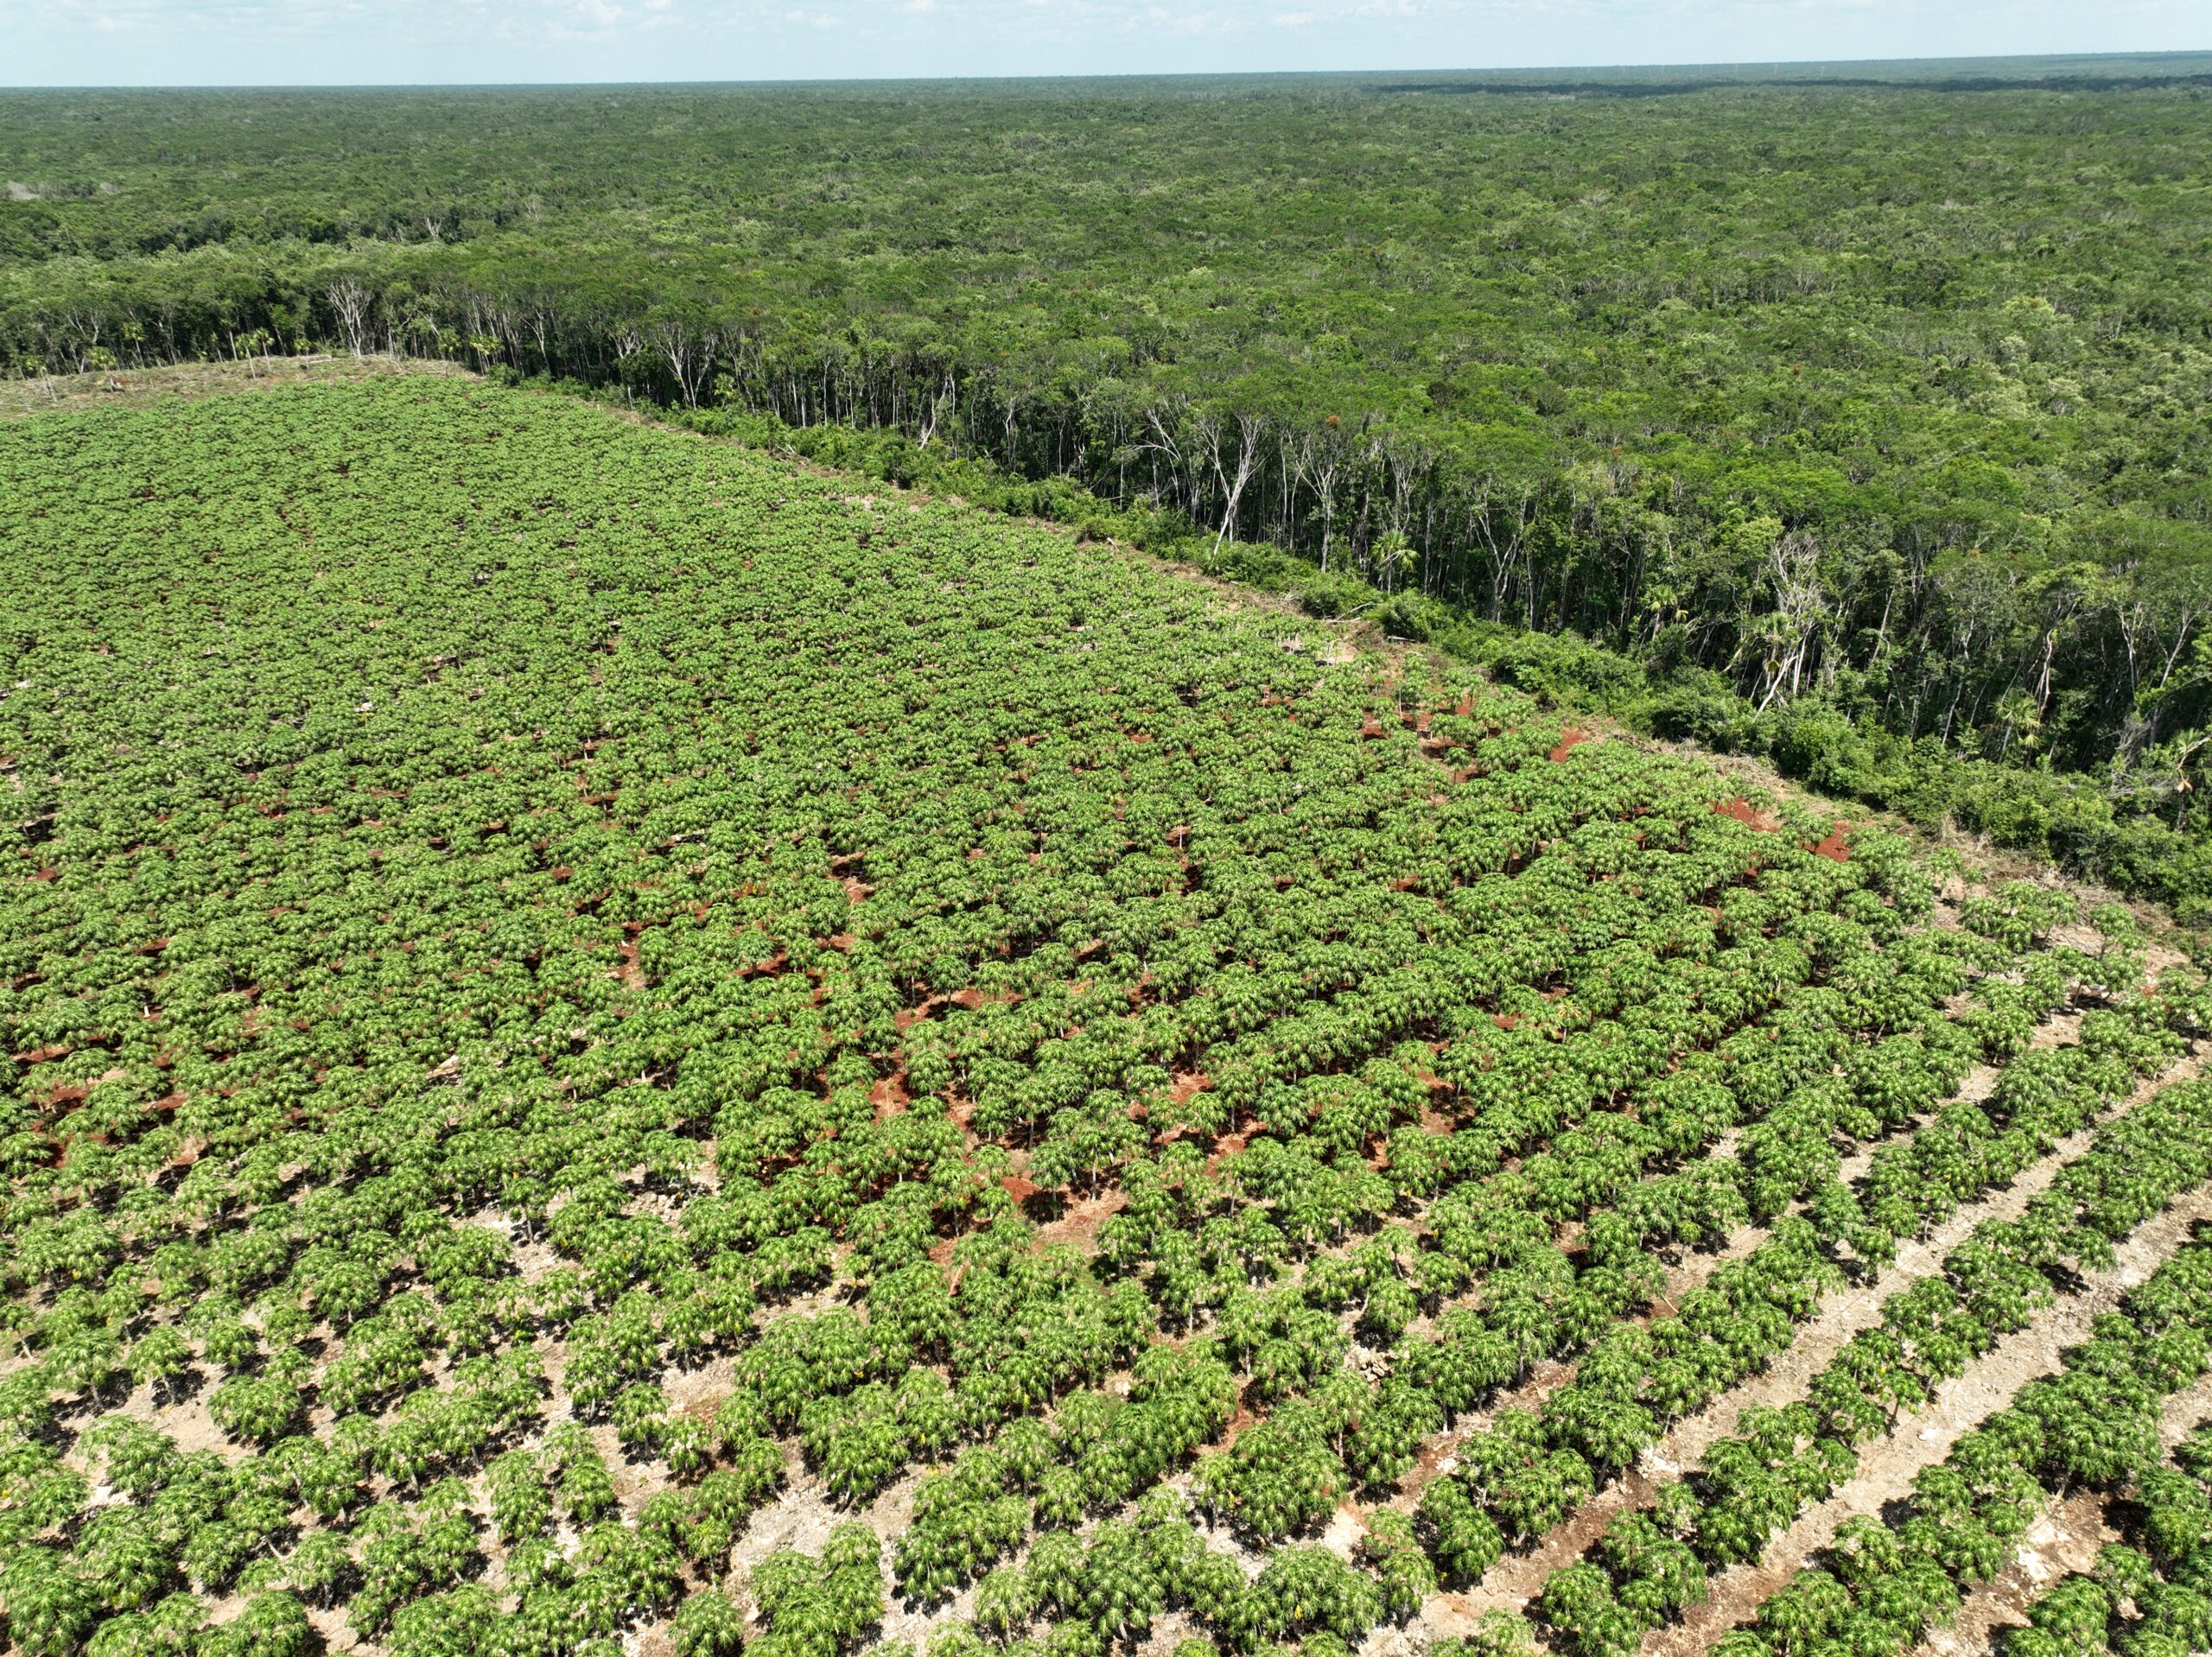 Políticas públicas y programas gubernamentales han promovido históricamente el cambio de uso de suelo en la península de Yucatán